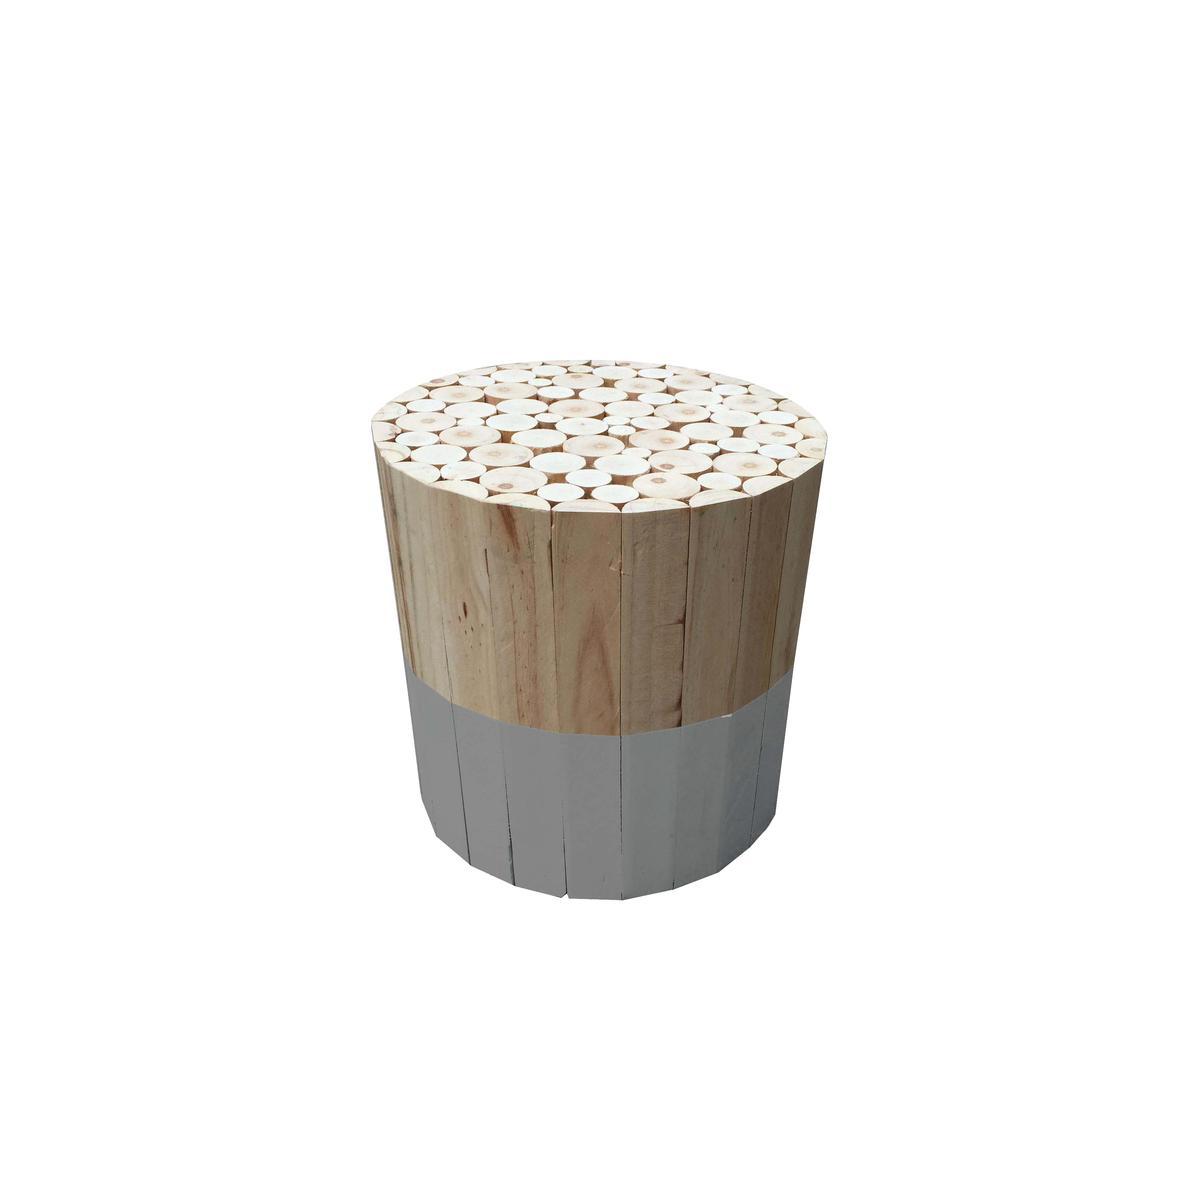 Tabouret rond en bois bicolore - Différents modèles - ø 30 x H 30 cm - Gris, beige - HOME DECO FACTORY